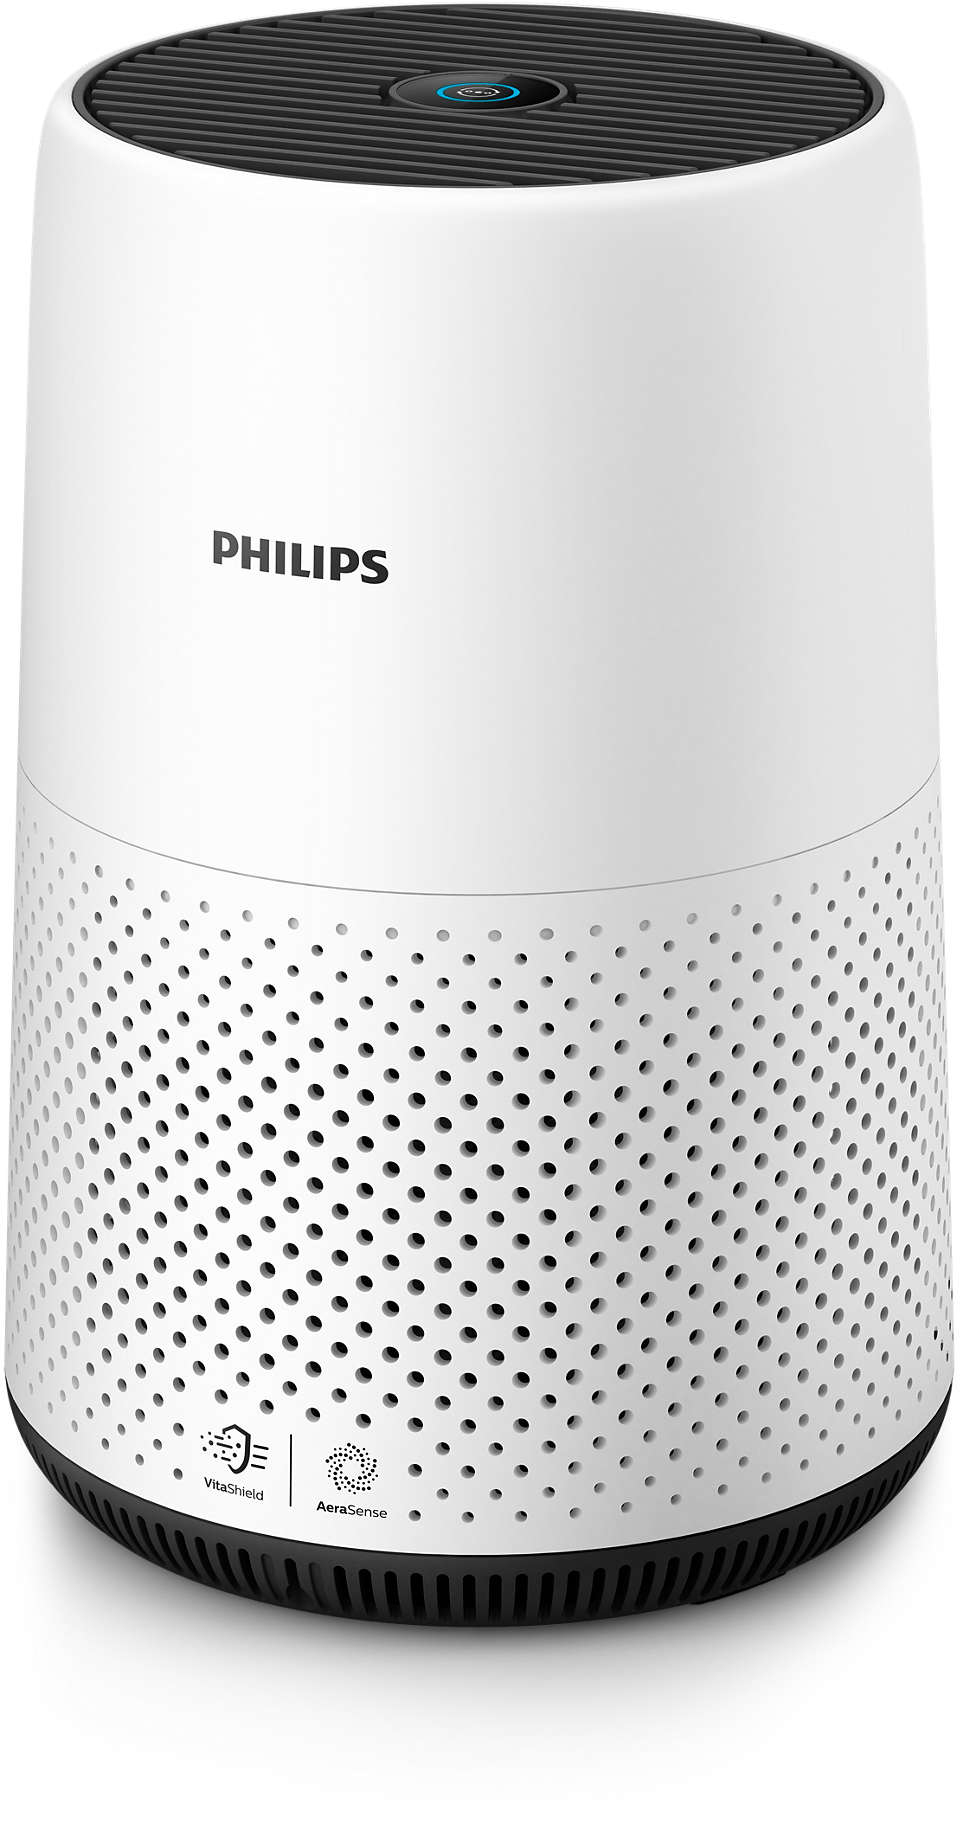 Philips 800 series AC0820 Air Purifier